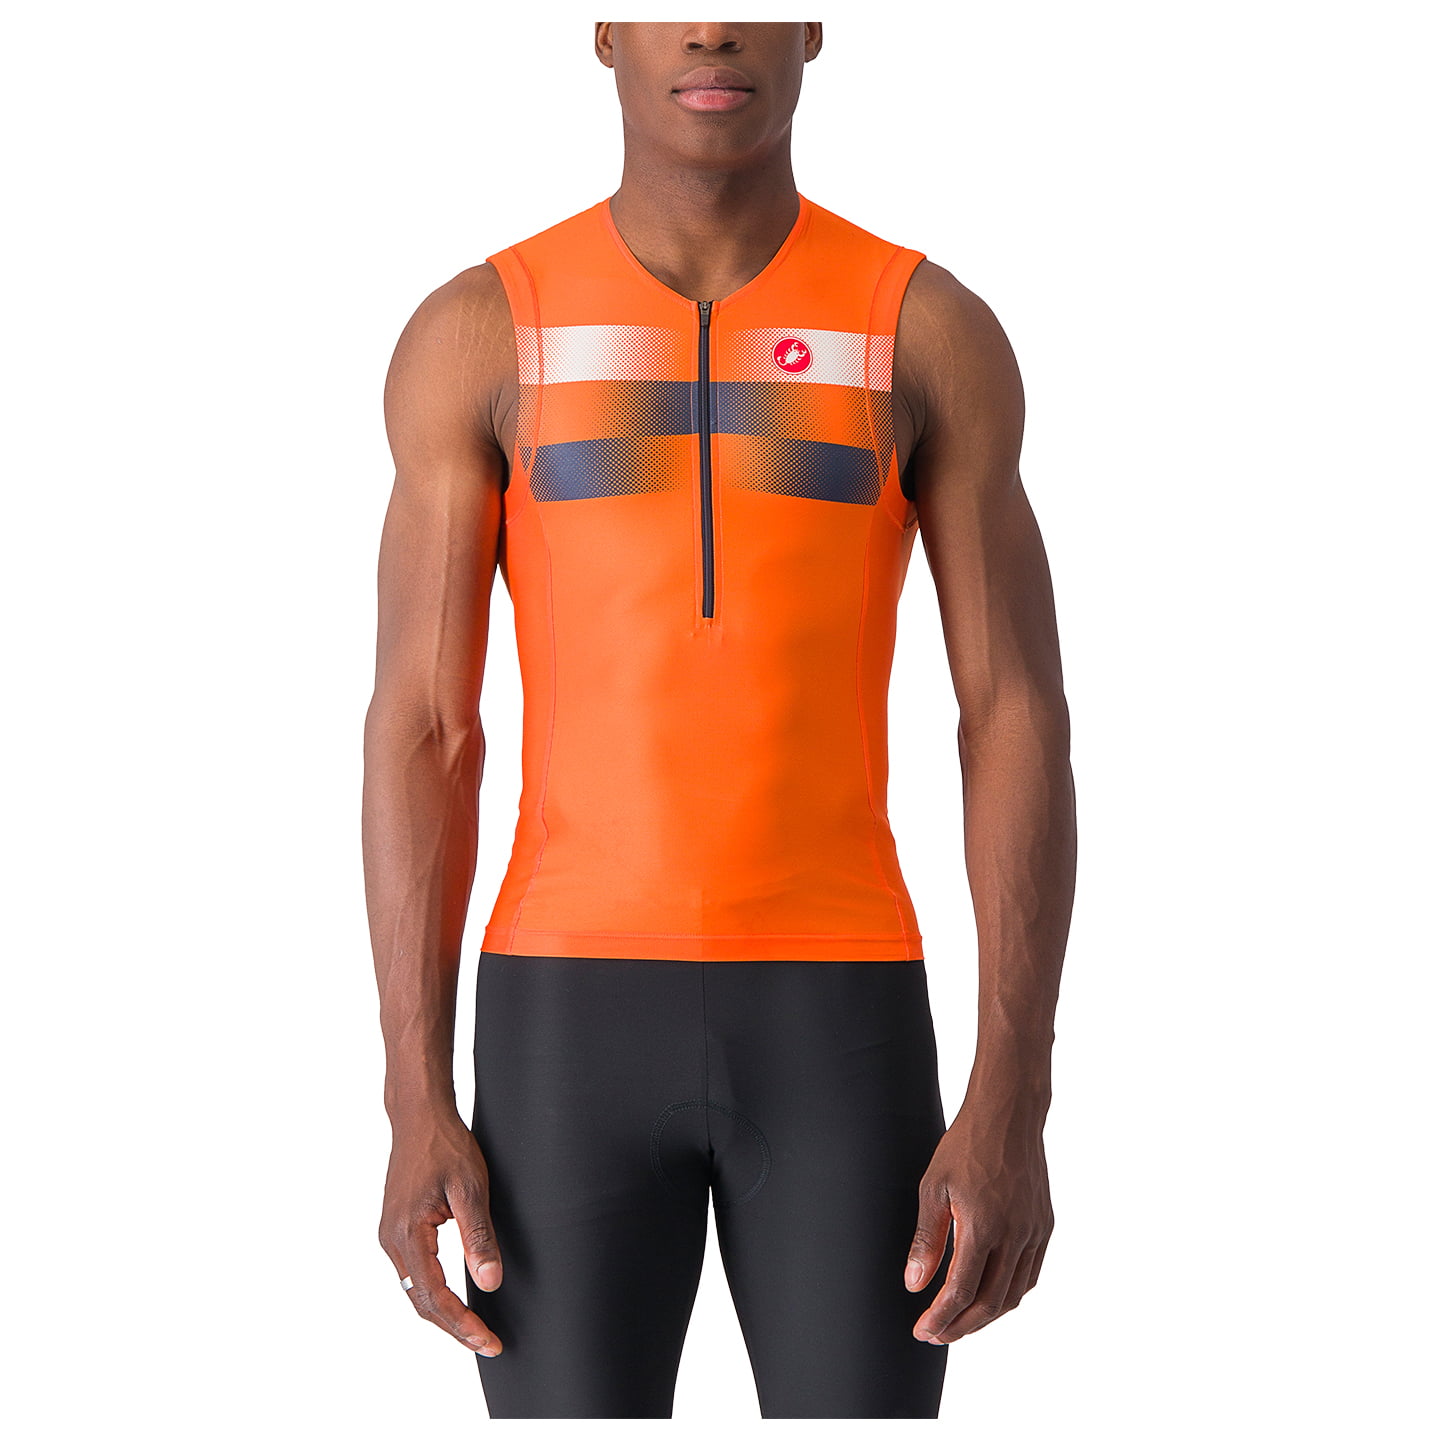 CASTELLI Free 2 Tri Top, for men, size 2XL, Triathlon shirt, Triathlon apparel